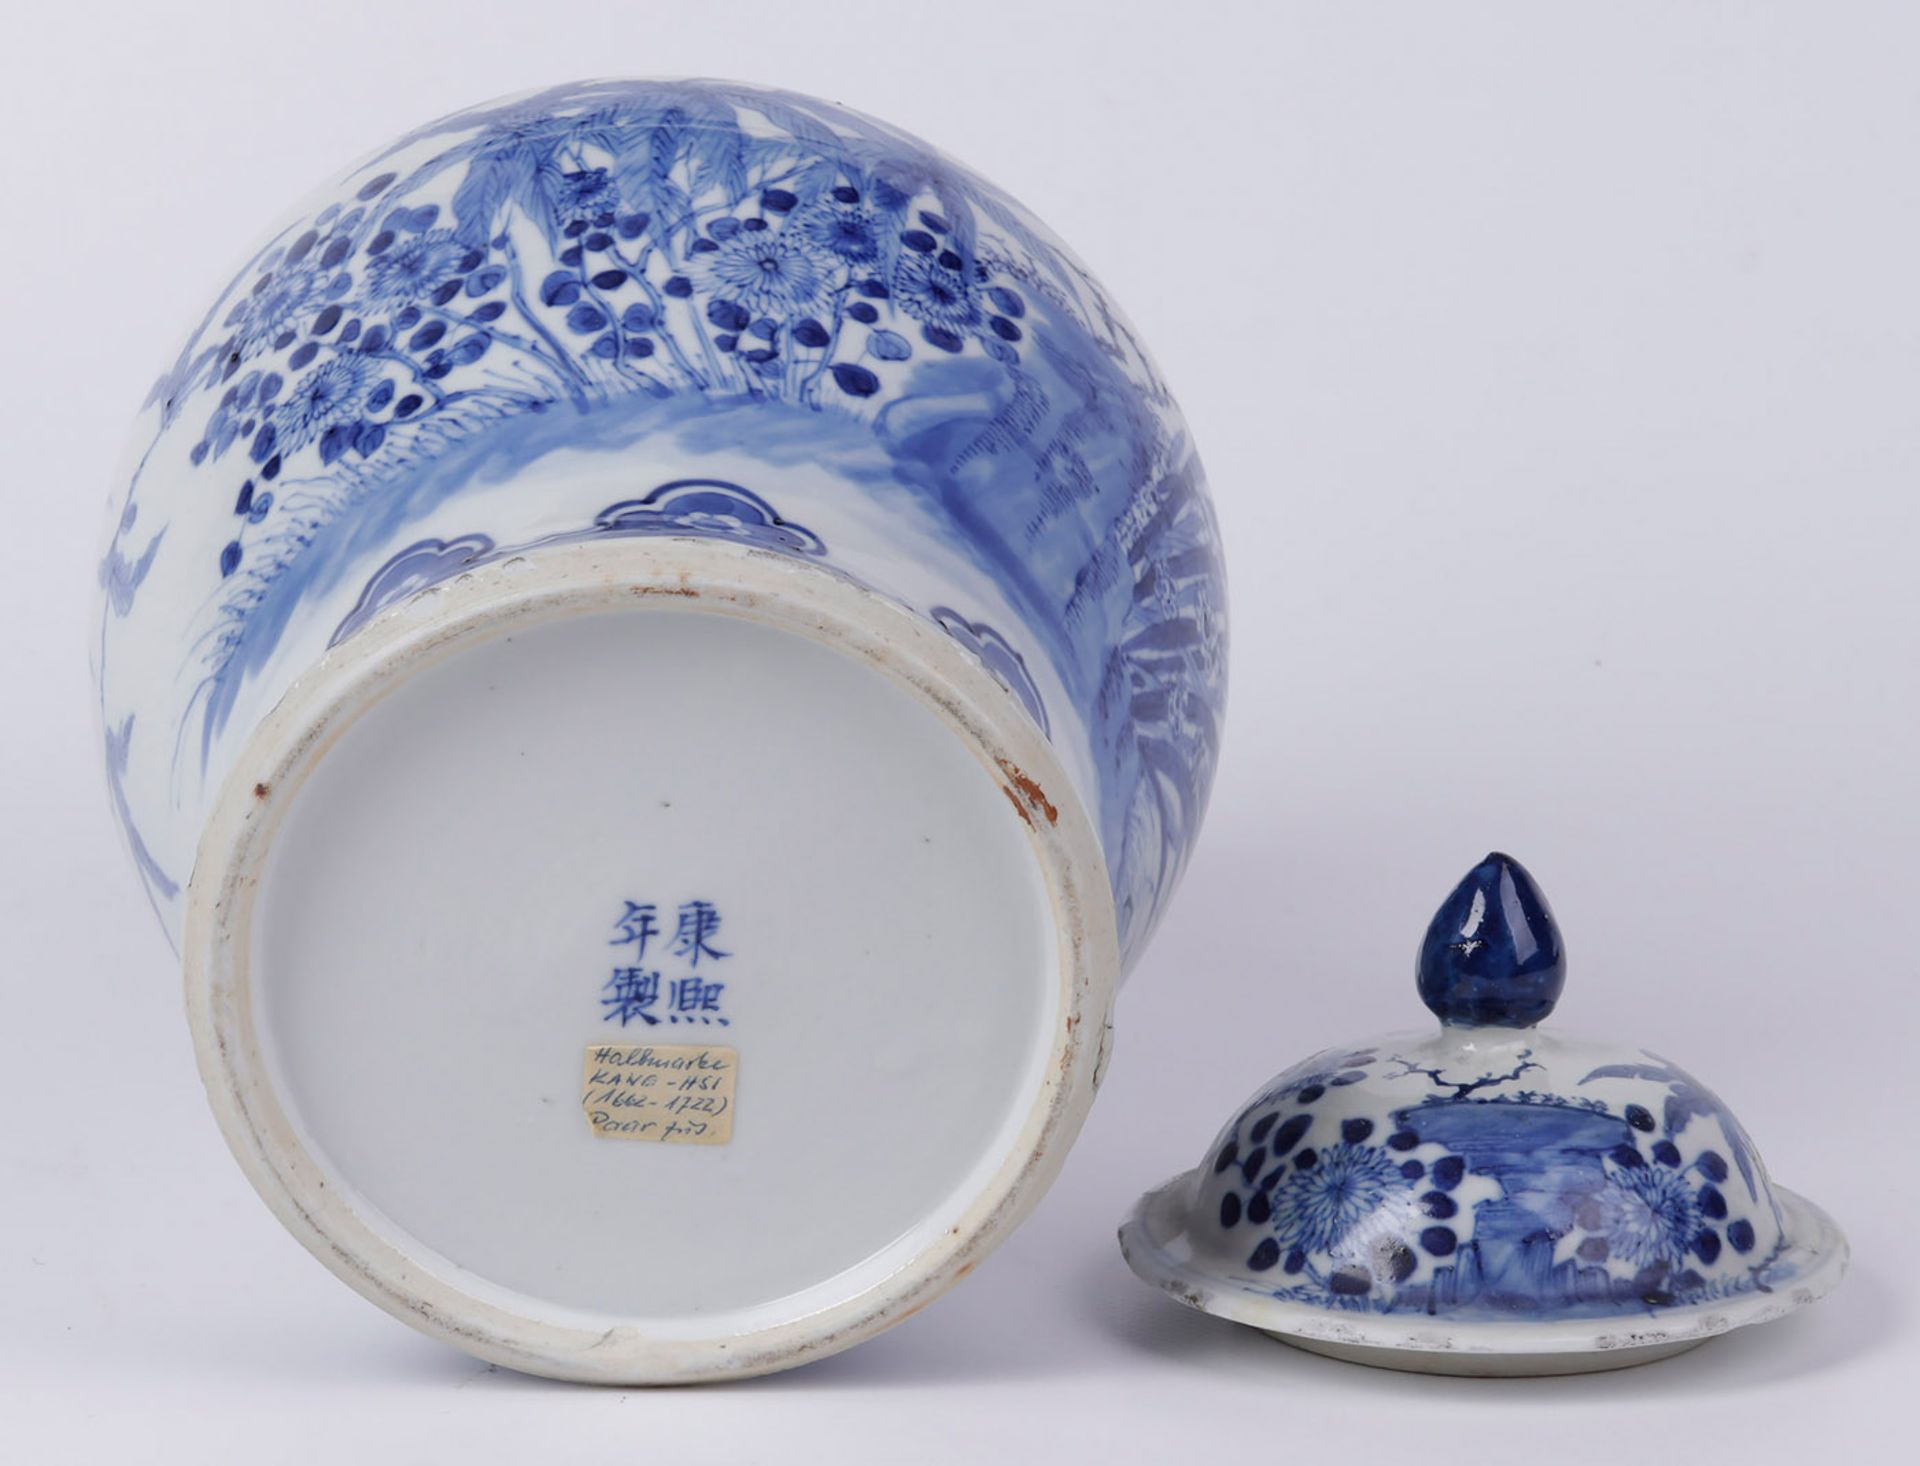 Deckelvase China 18. Jh., Kang Hsi, Blaudekor mit Blumen und Insekten - Image 3 of 3